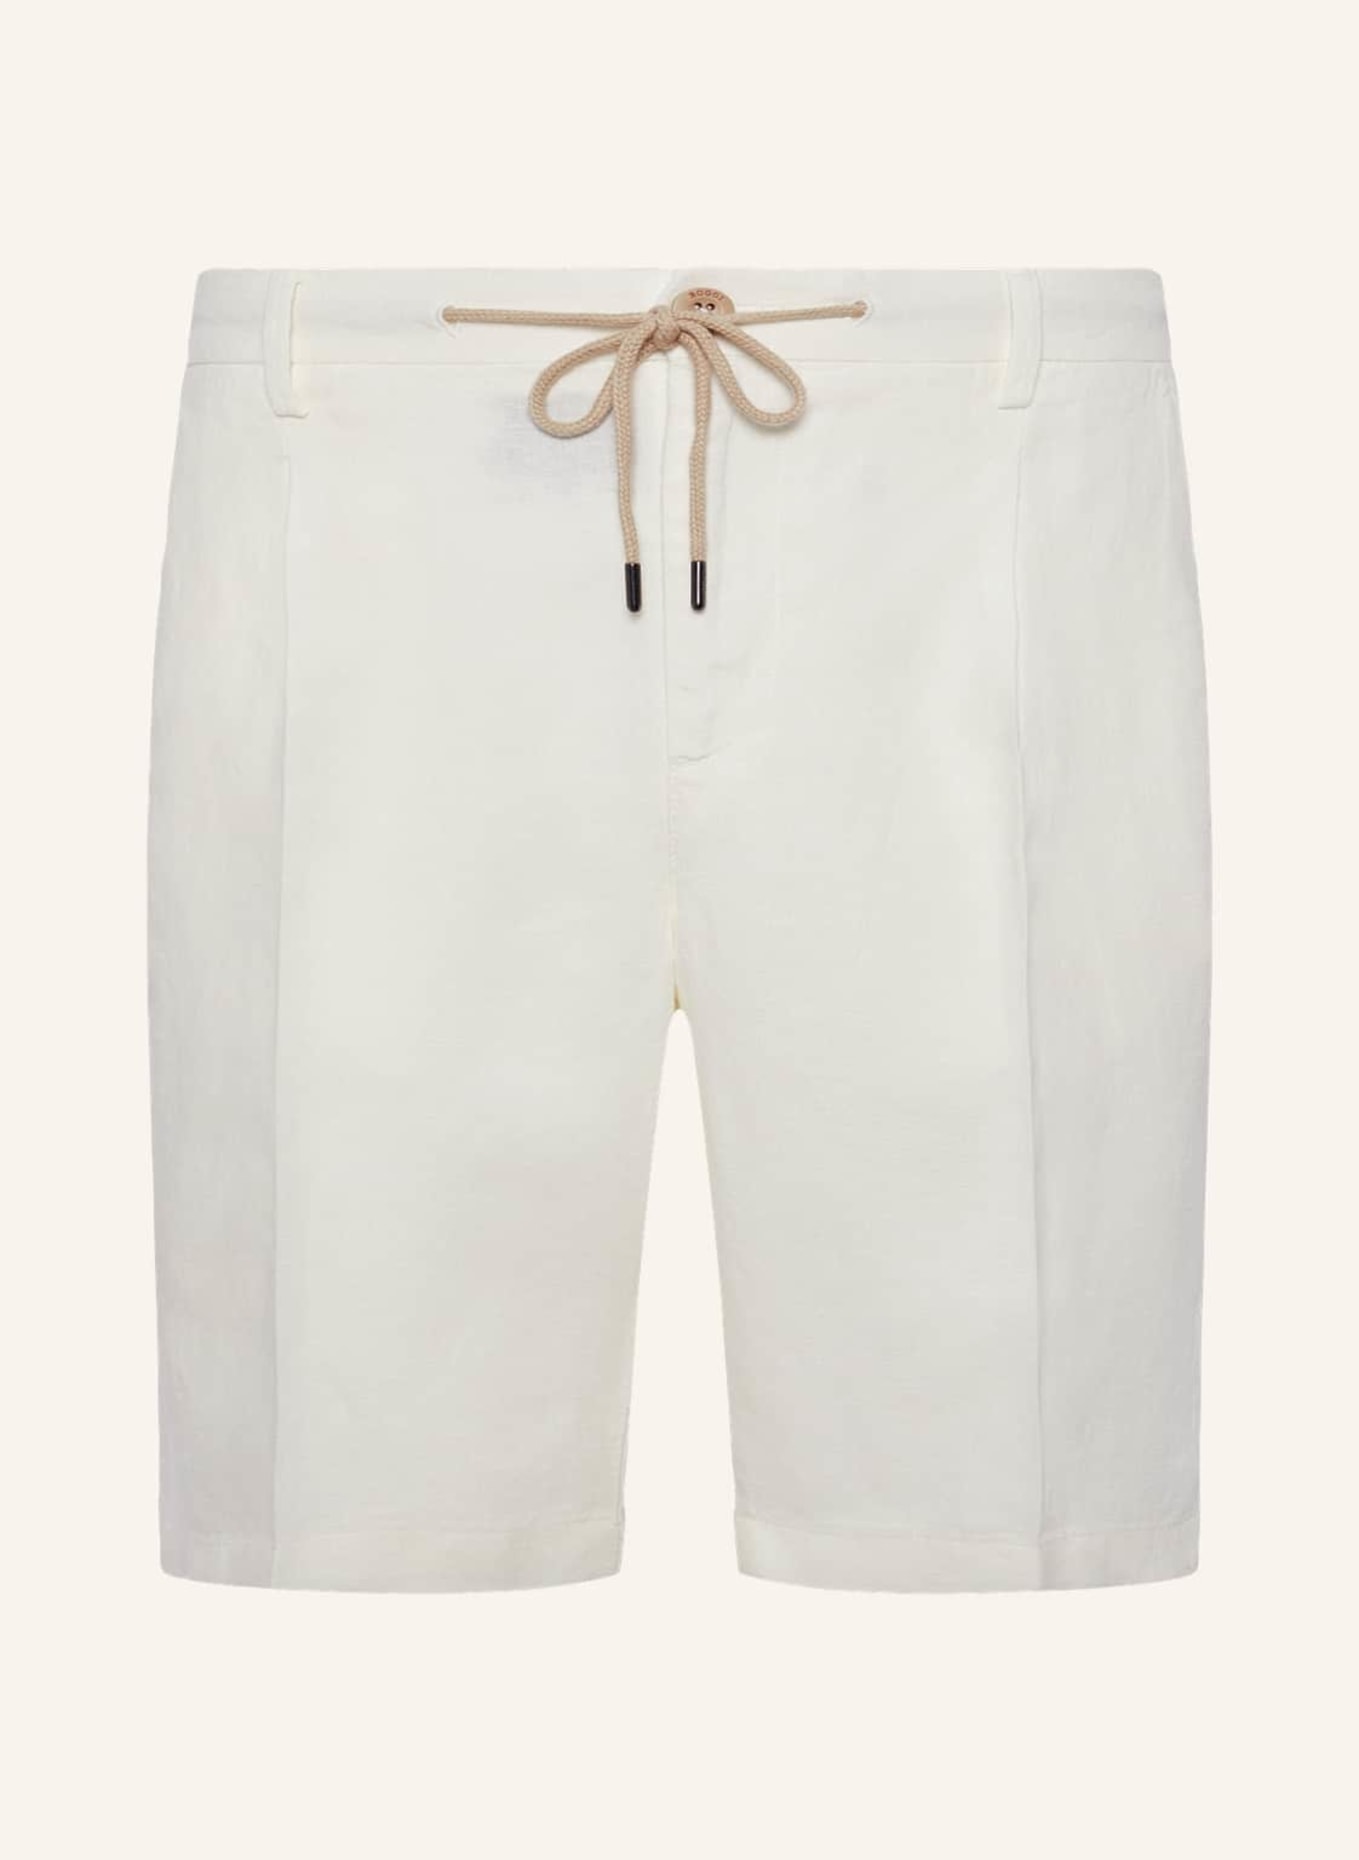 BOGGI MILANO Shorts aus Leinen, Farbe: WEISS (Bild 1)